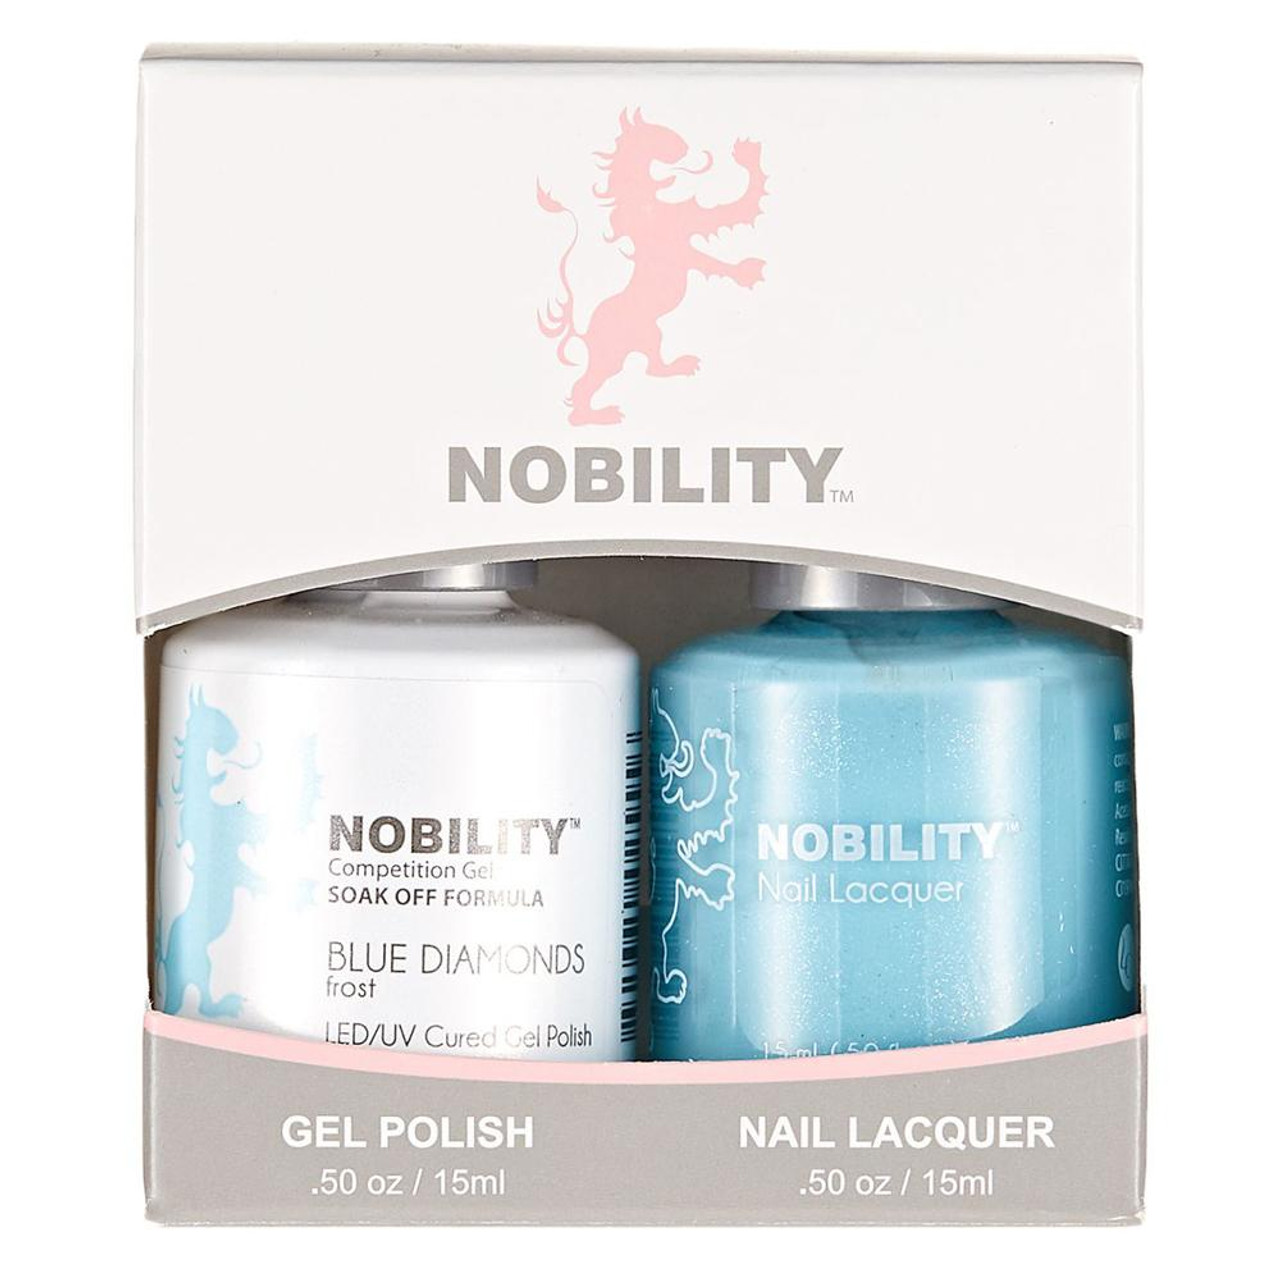 LeChat Nobility Gel Polish & Nail Lacquer Duo Set Blue Diamond - .5 oz / 15 ml